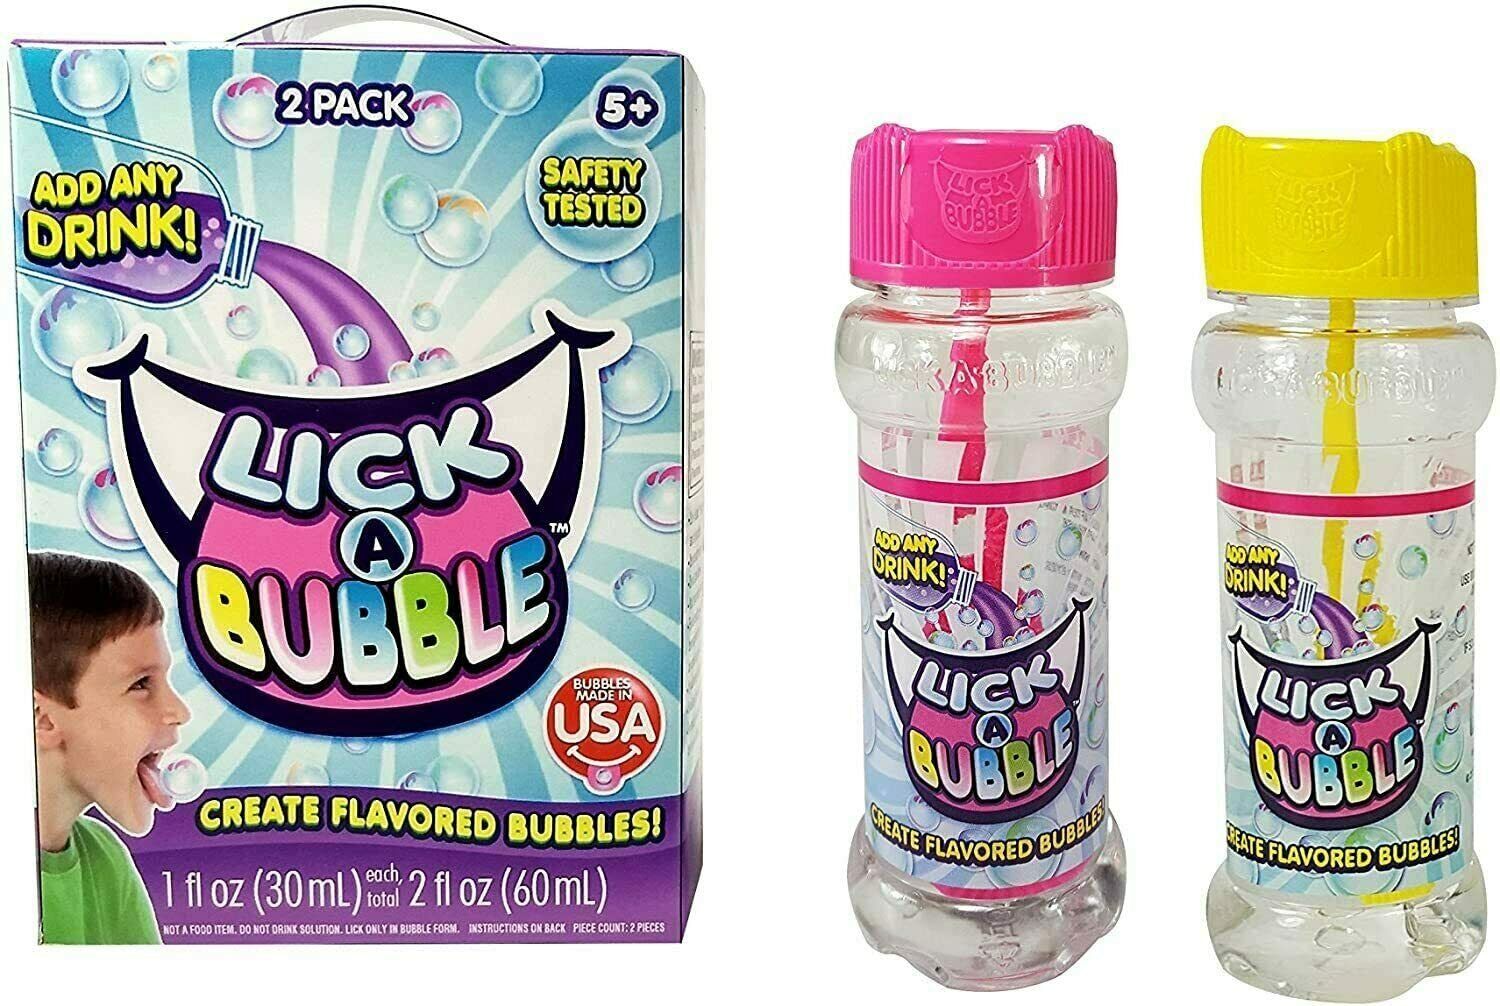 New life Flavored Bubbles for San Antonio Mall Kids - LickaBubble Non Edible Toxic Safe